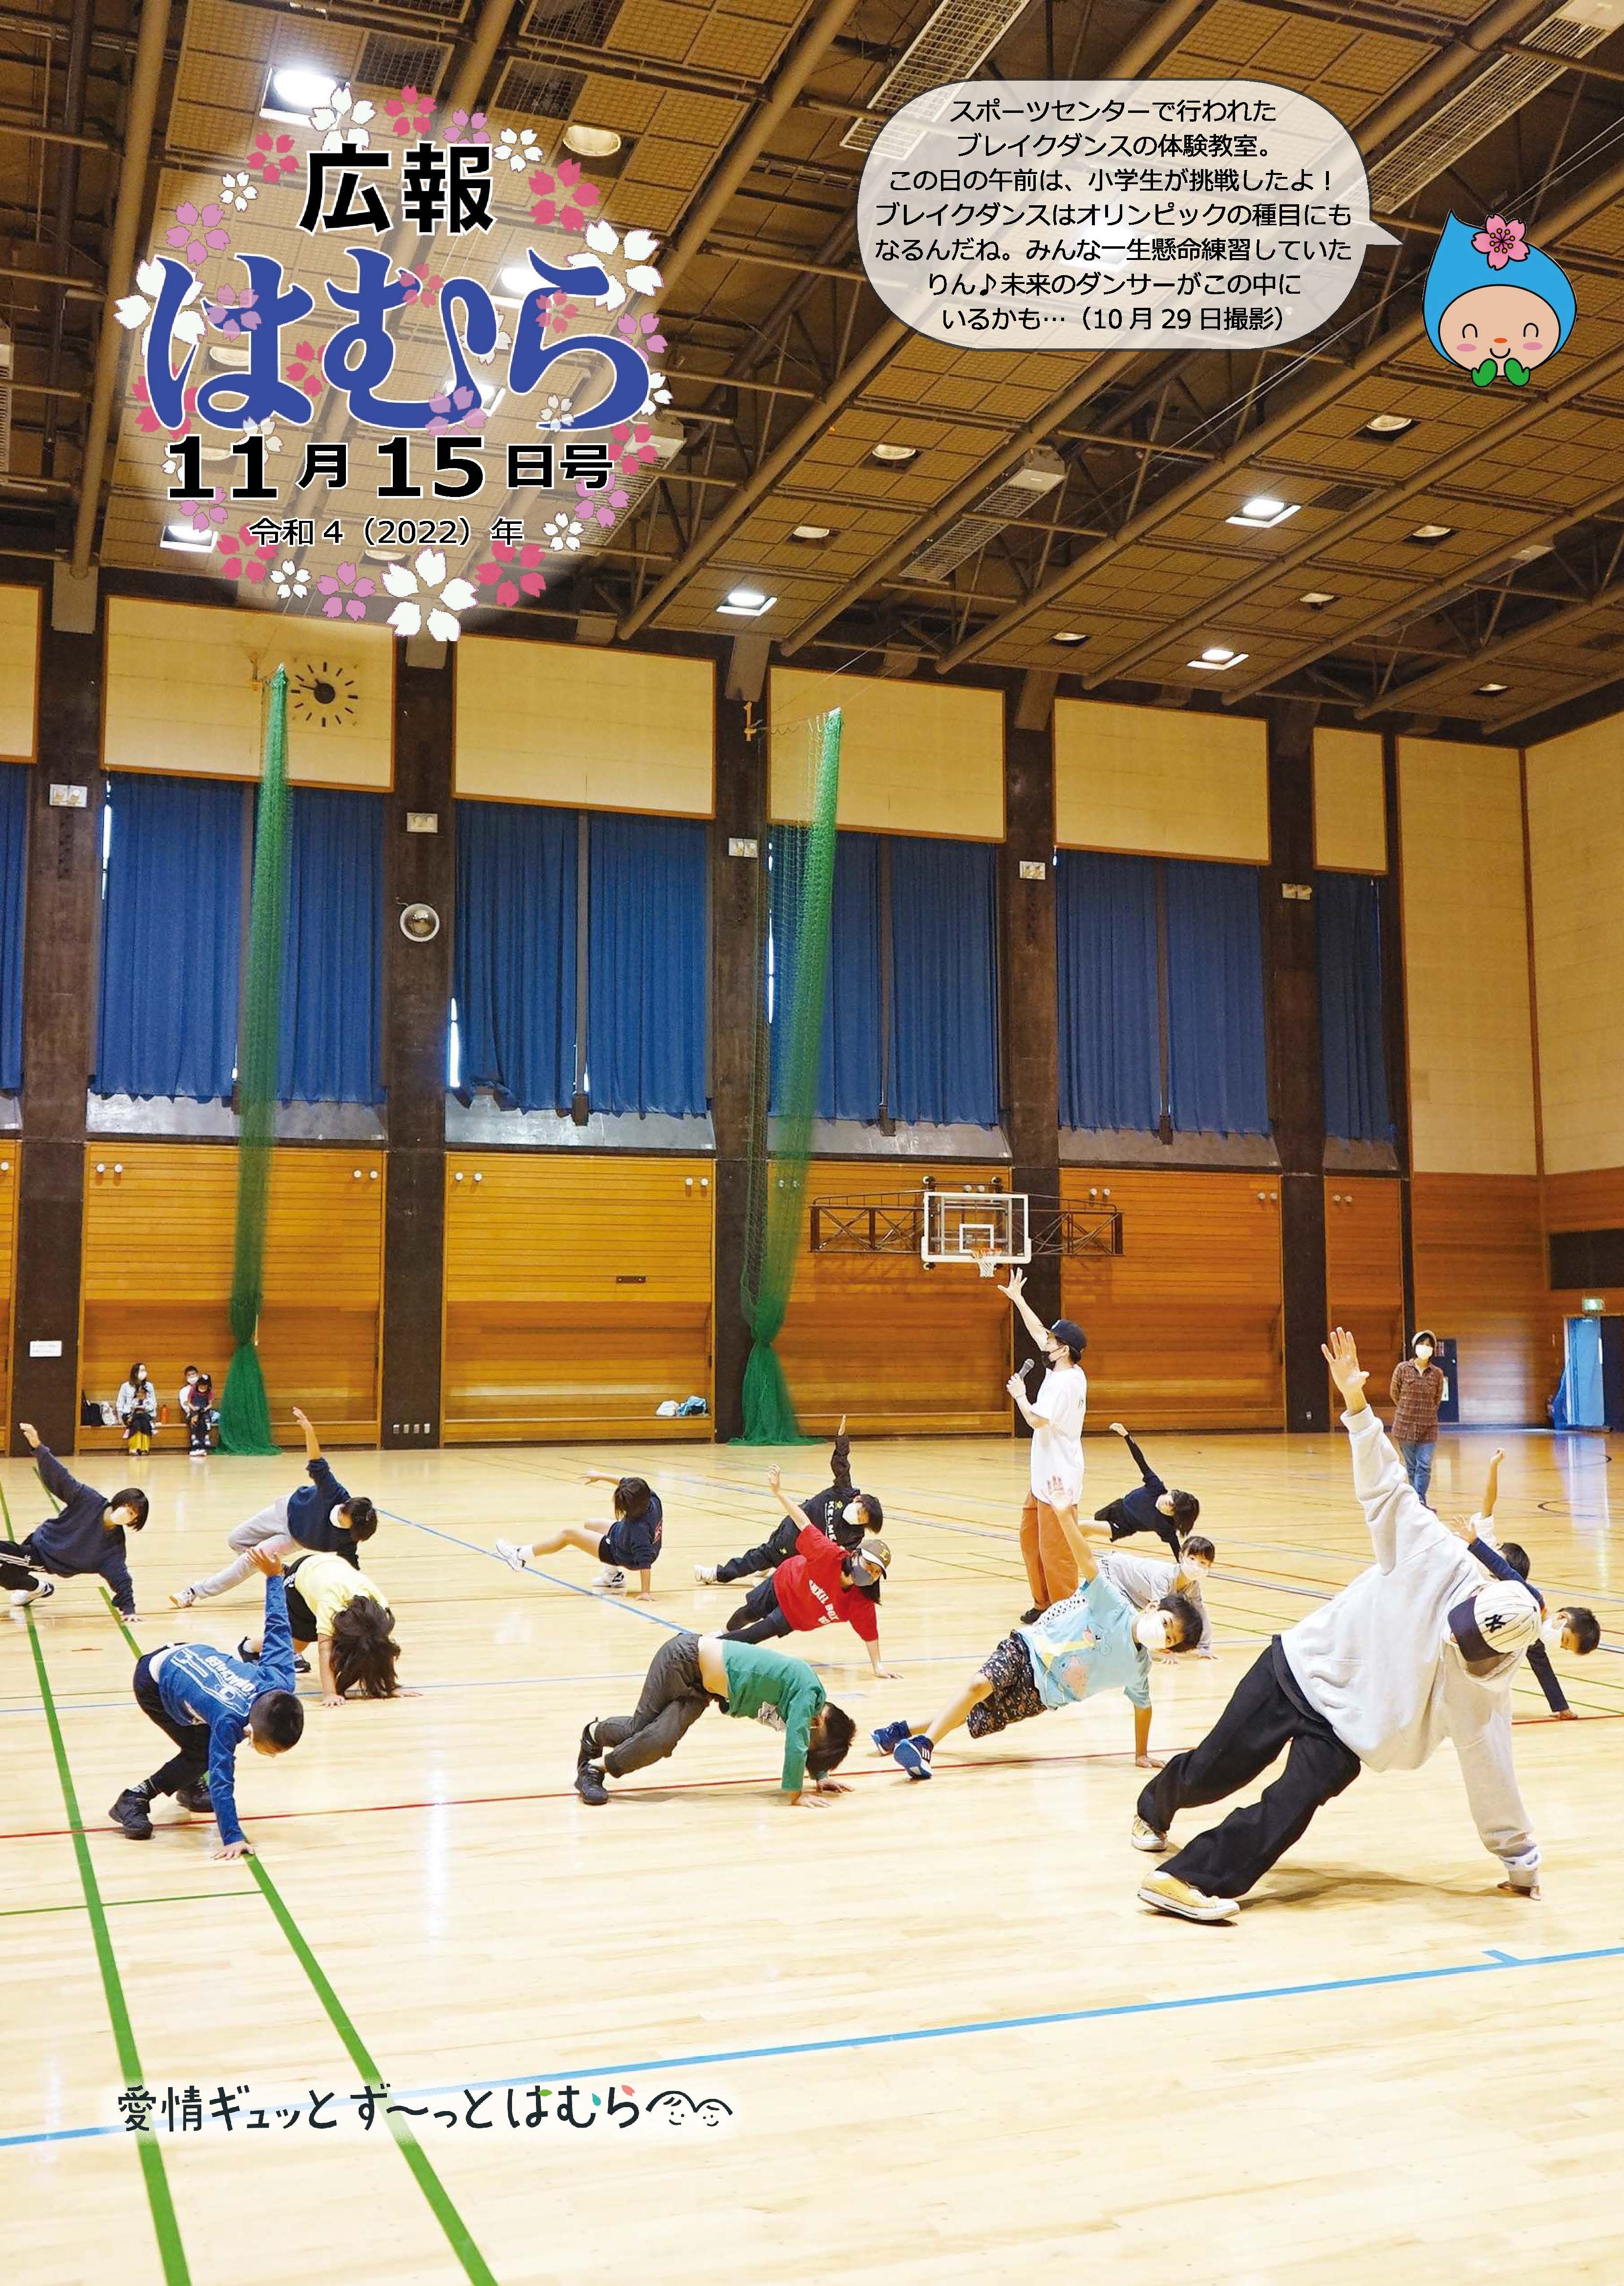 広報はむら11月15日号No.1081表紙　スポーツセンターで行われたブレイクダンス体験教室